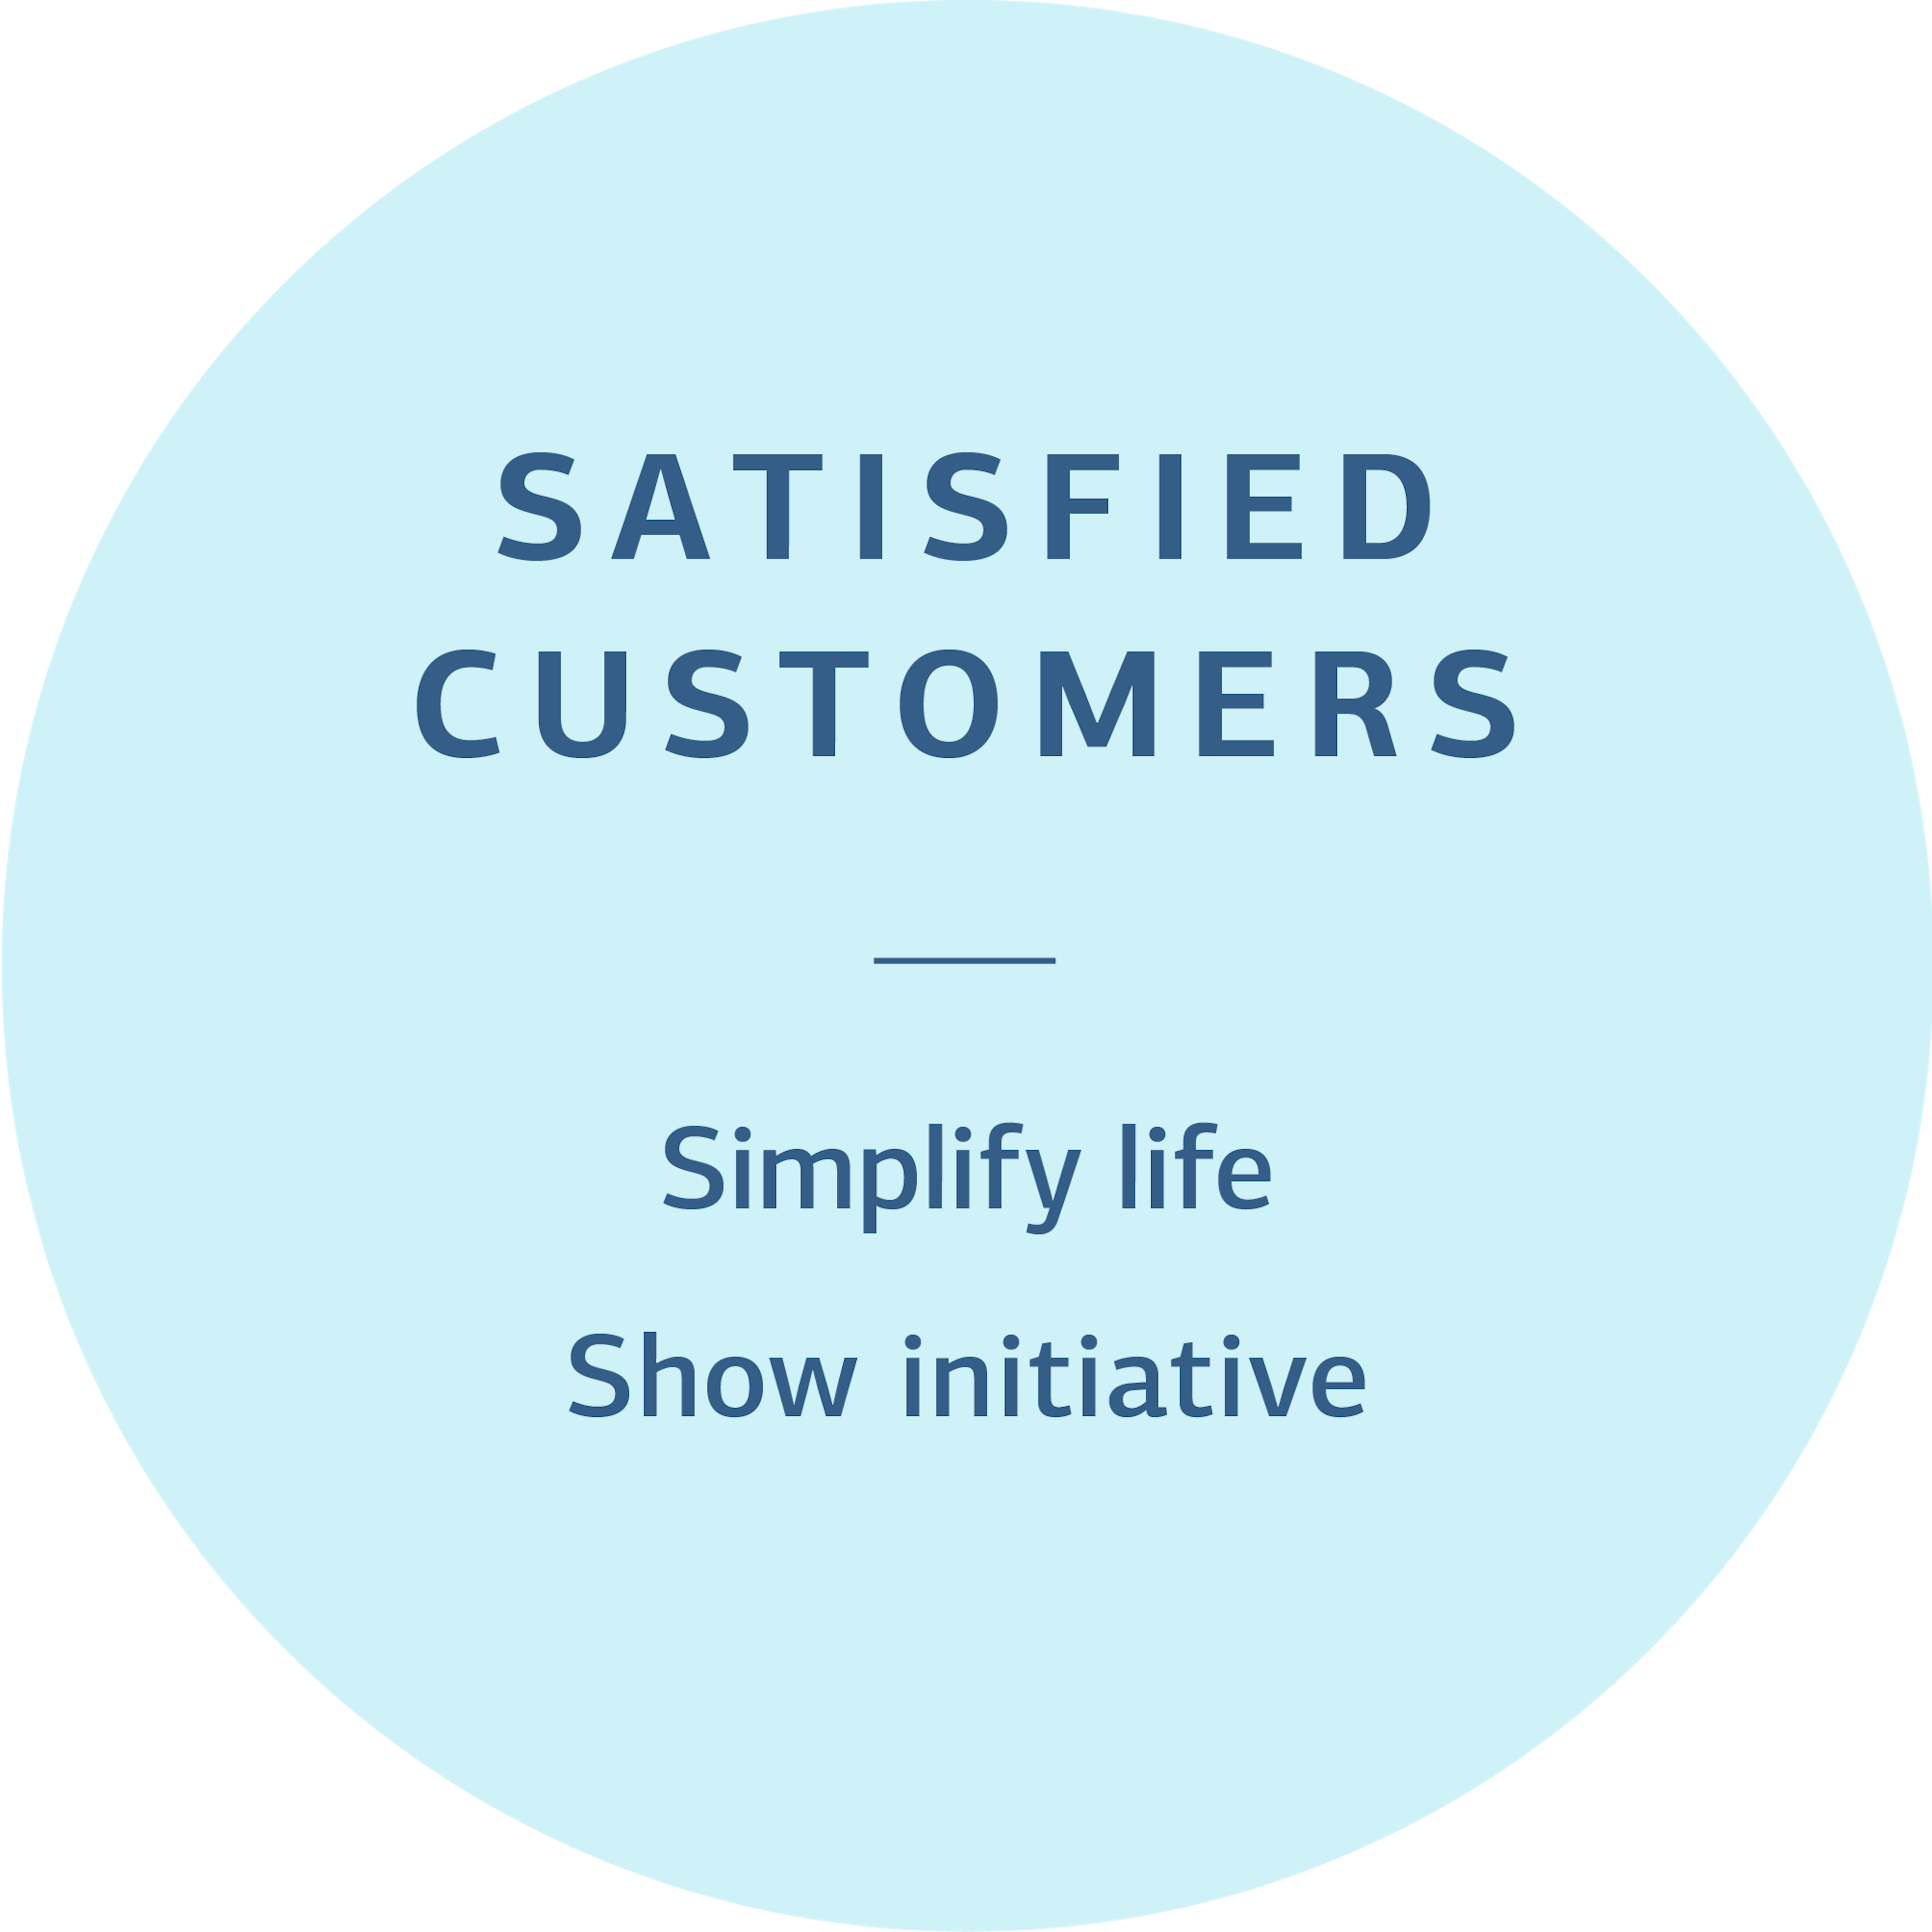 Satisfied customers